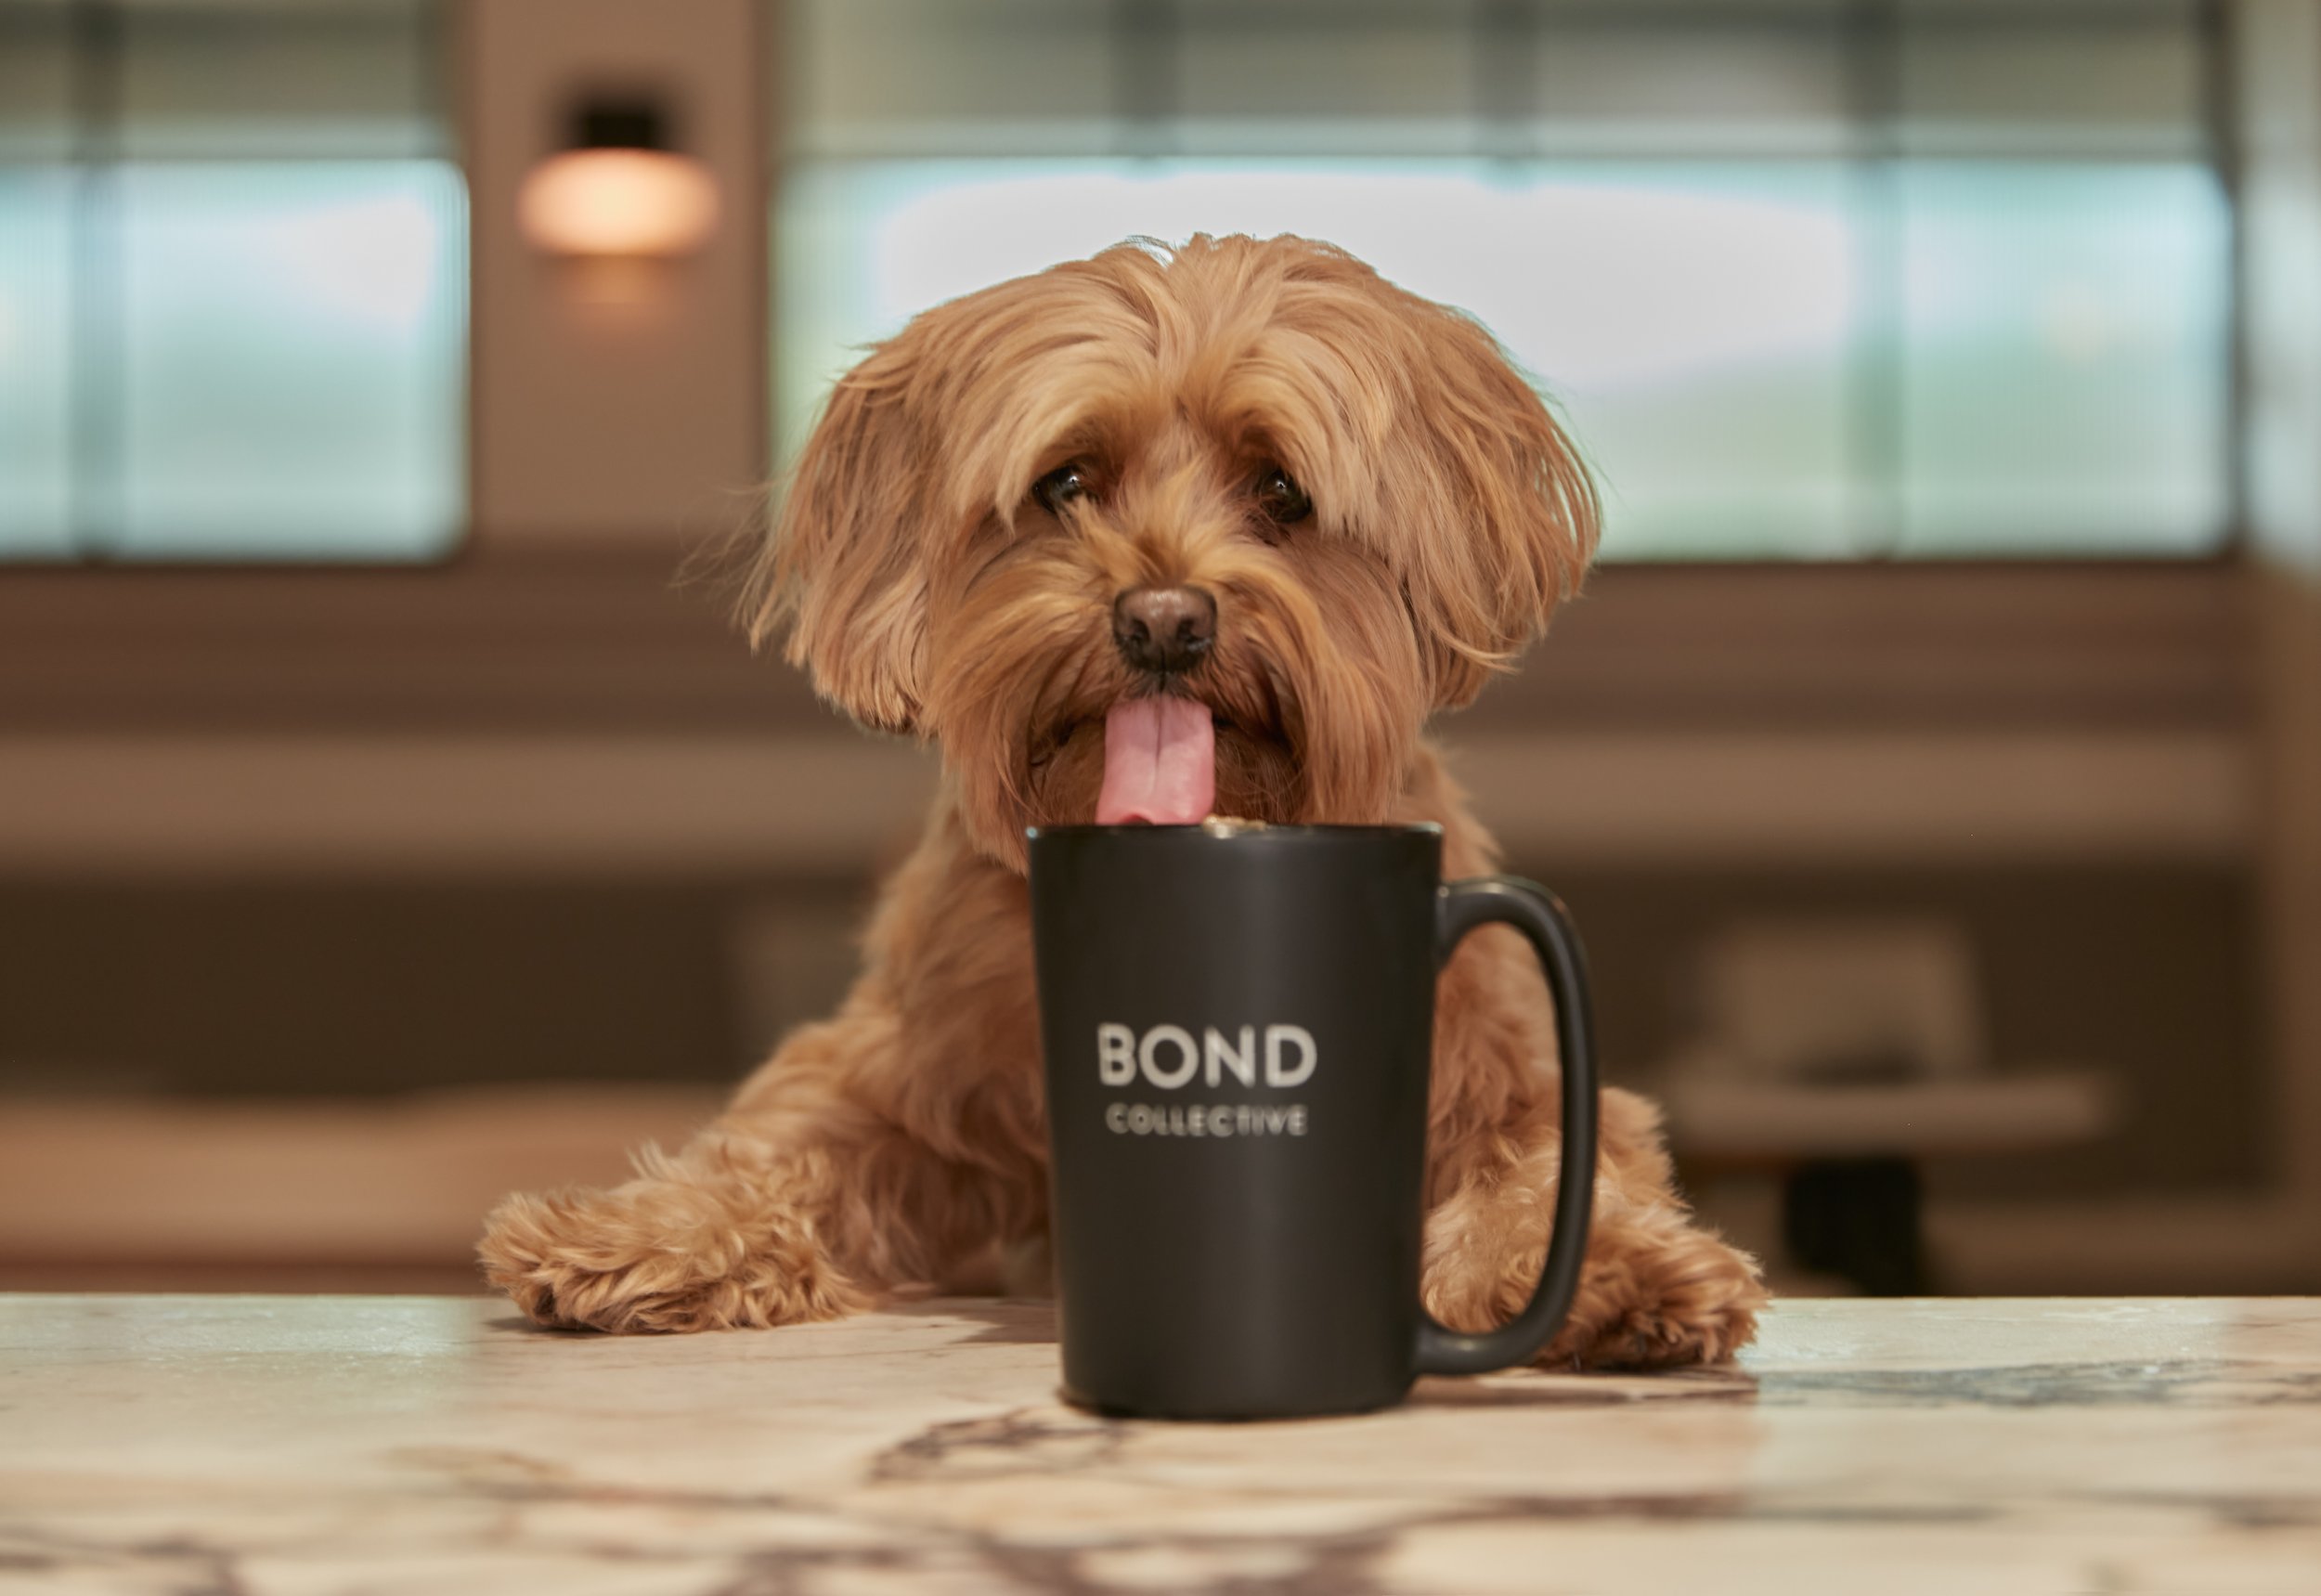 Dog-friendly coworking coffee